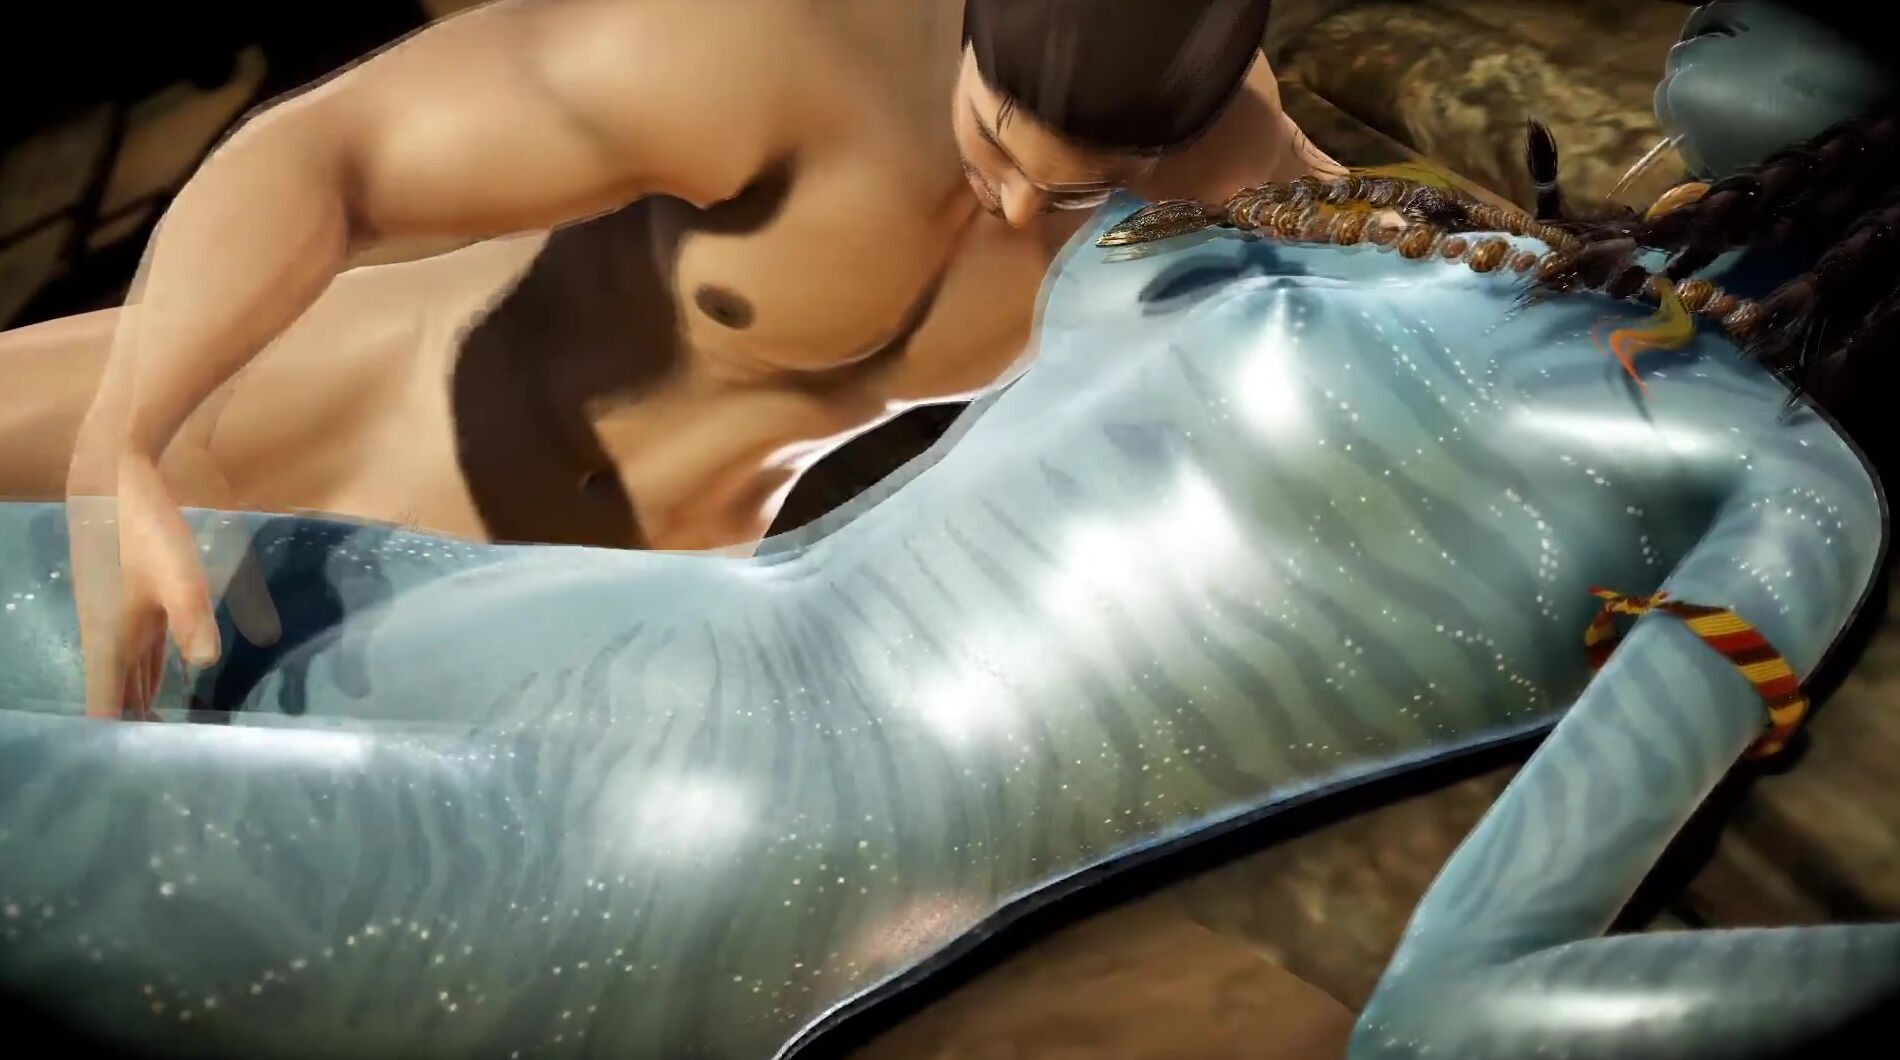 Avatar 3d Porn - Avatar - Sex with Neytiri - 3D Porn 4kPorn.XXX